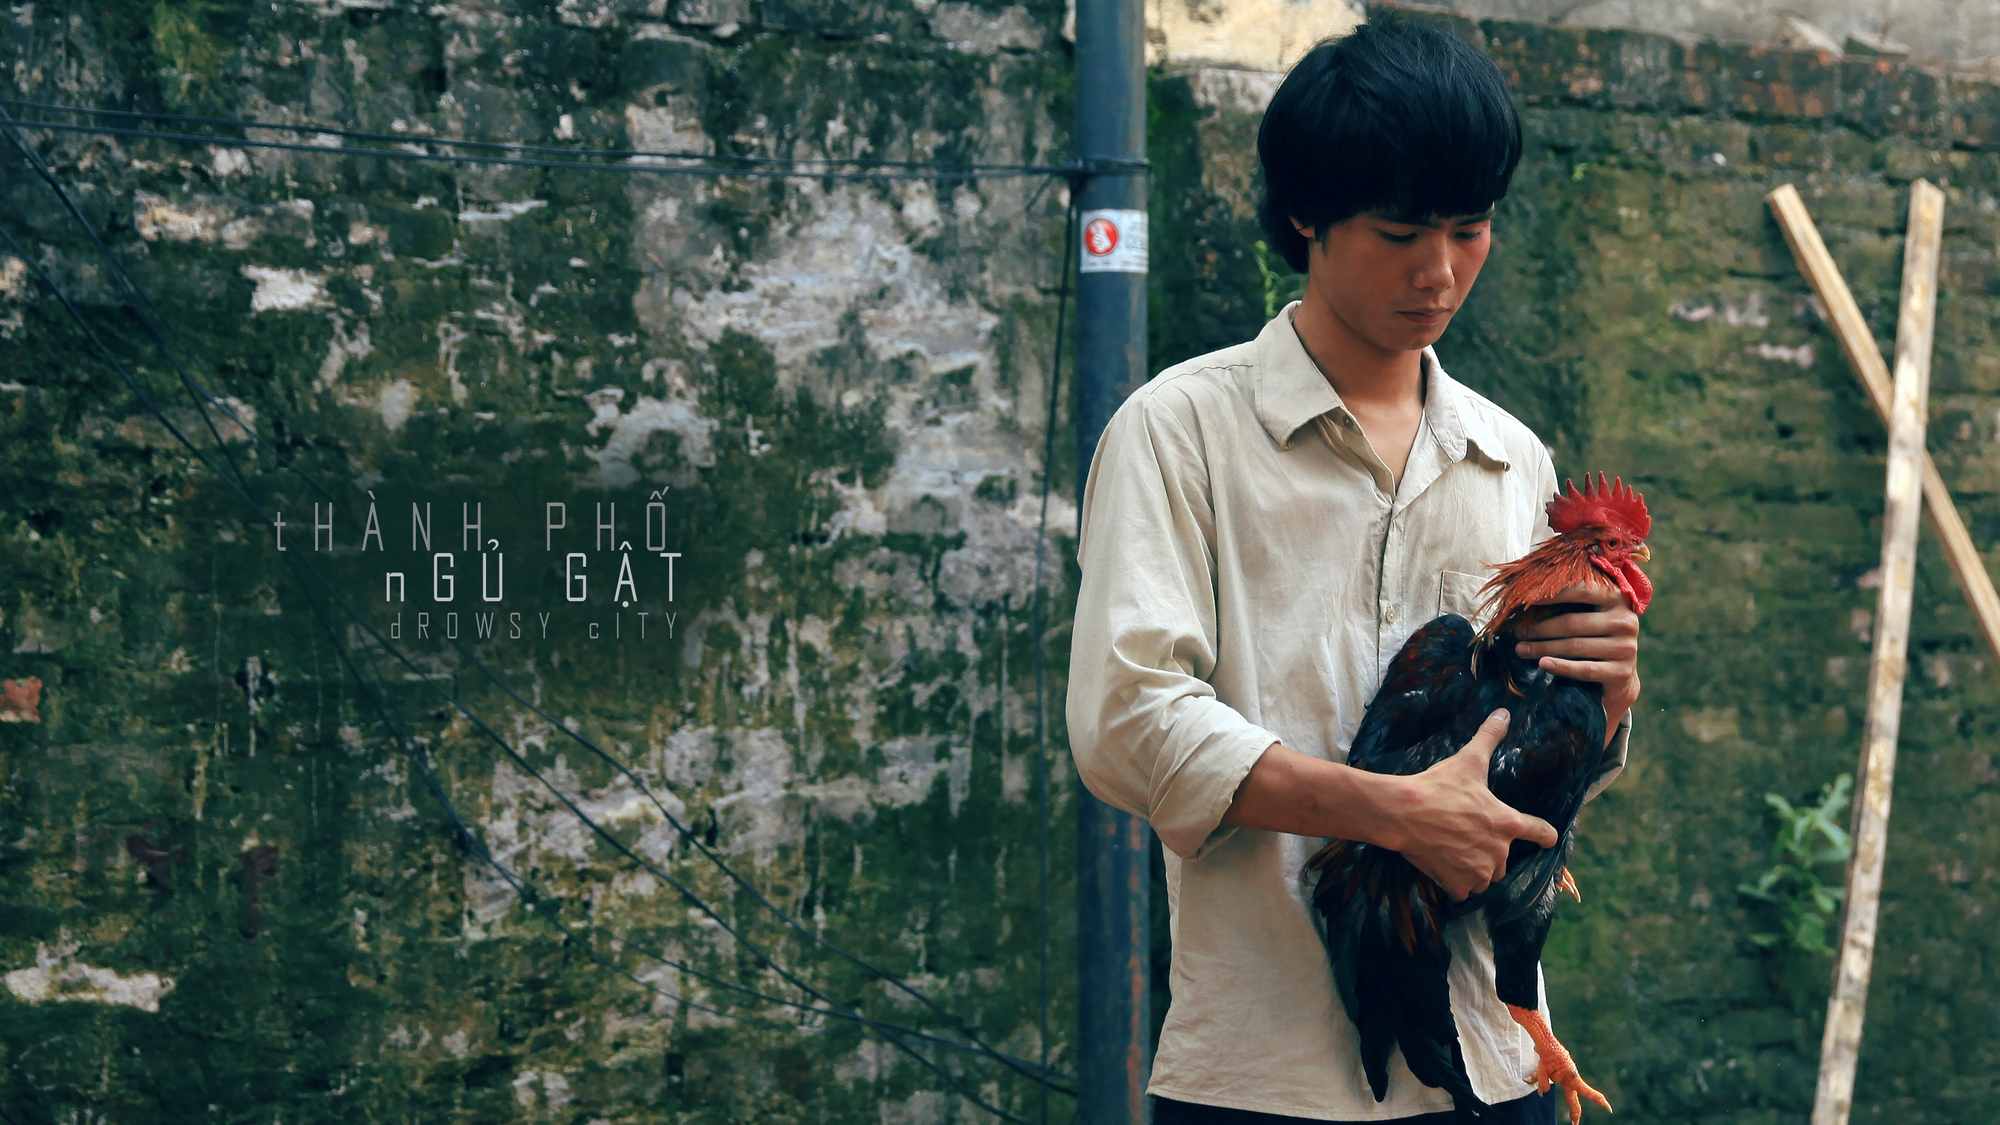 Phim Việt 18+ ra rạp tháng 10, chưa công chiếu đã gây xôn xao - Ảnh 1.